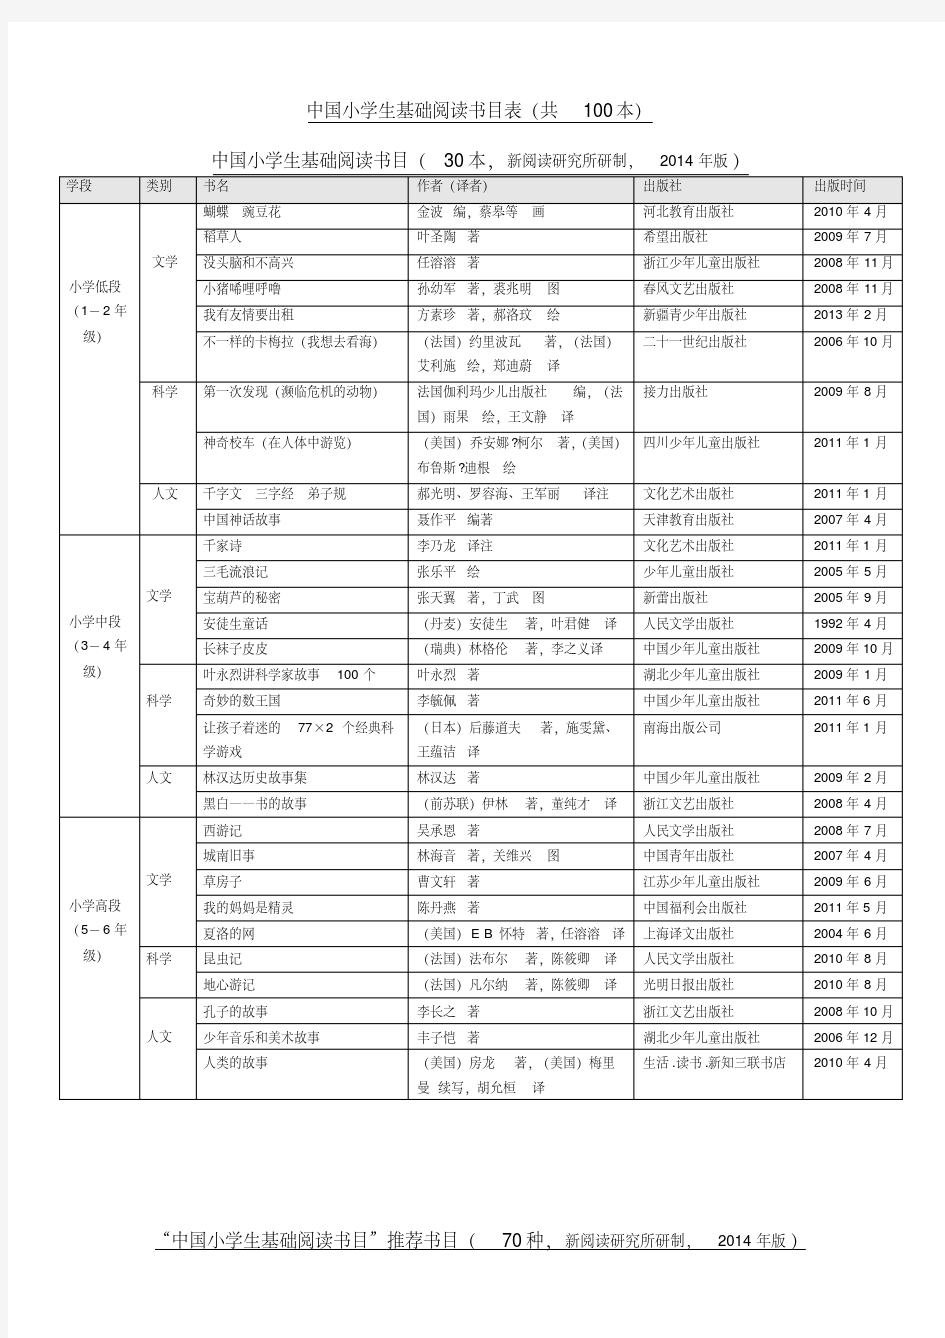 《中国小学生基础阅读书目表》---修订版(2014年)